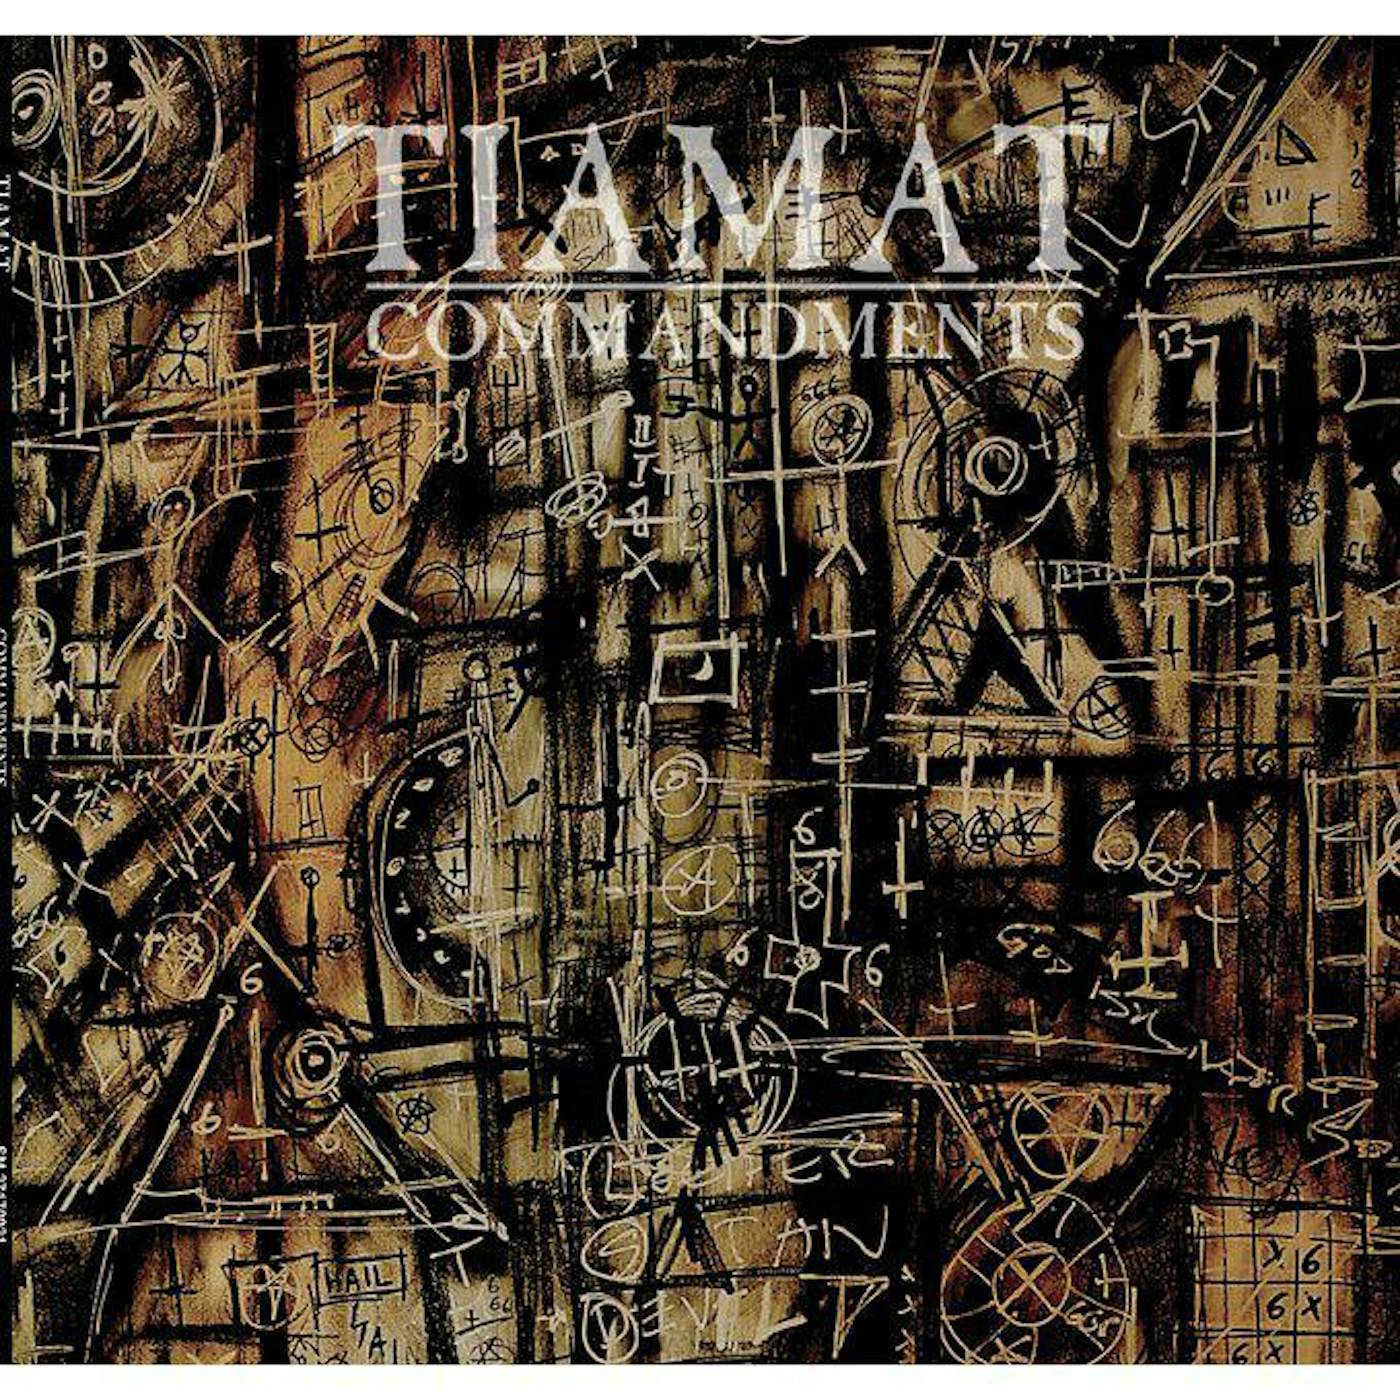 Tiamat Commandments: An Anthology (gold vinyl)